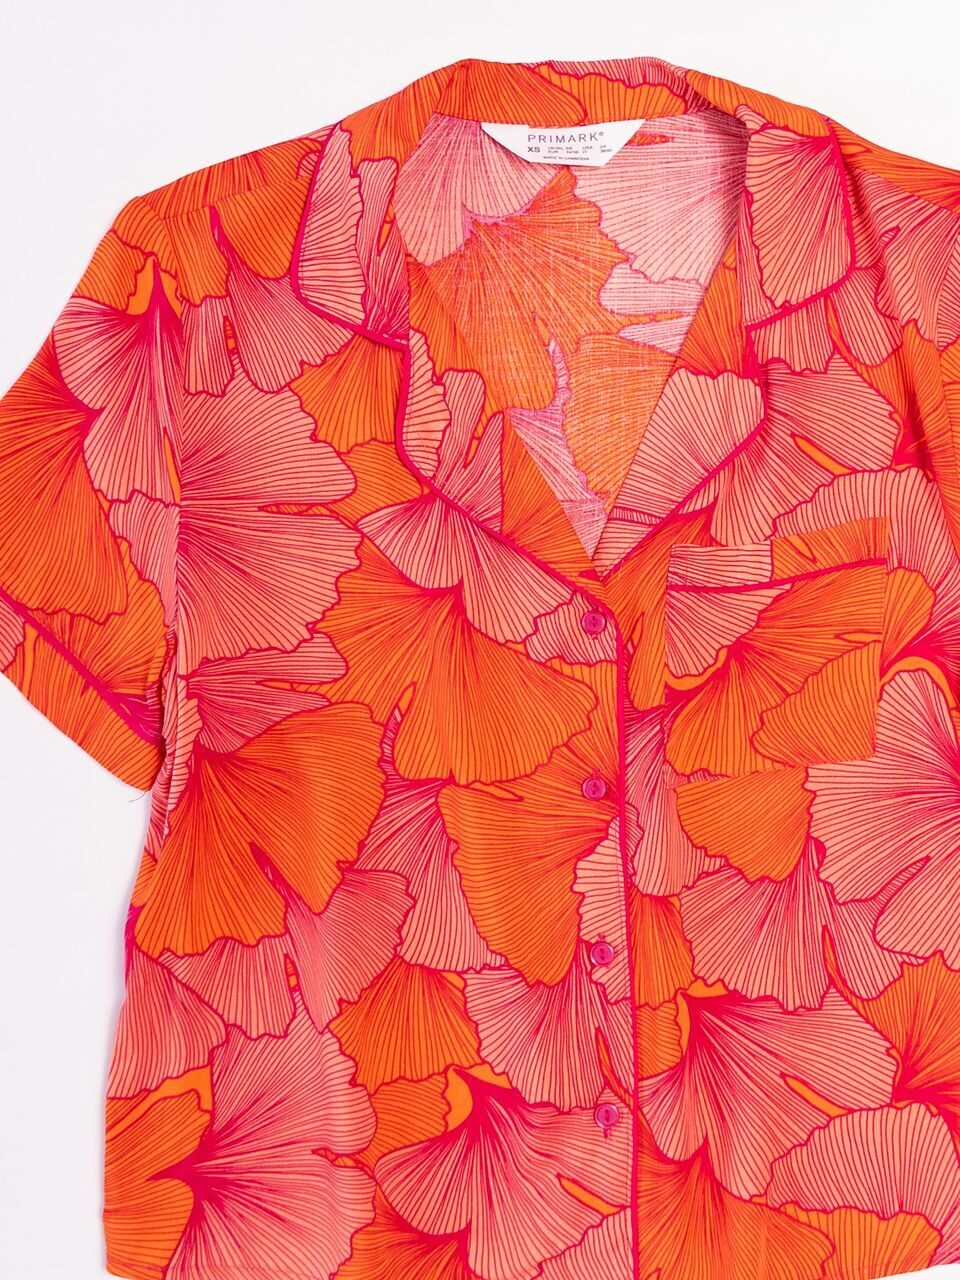 Рубашка из вискозы женская цвет оранжевый/розовый с принтом размер EUR 34/36 (rus 40-42) Primark